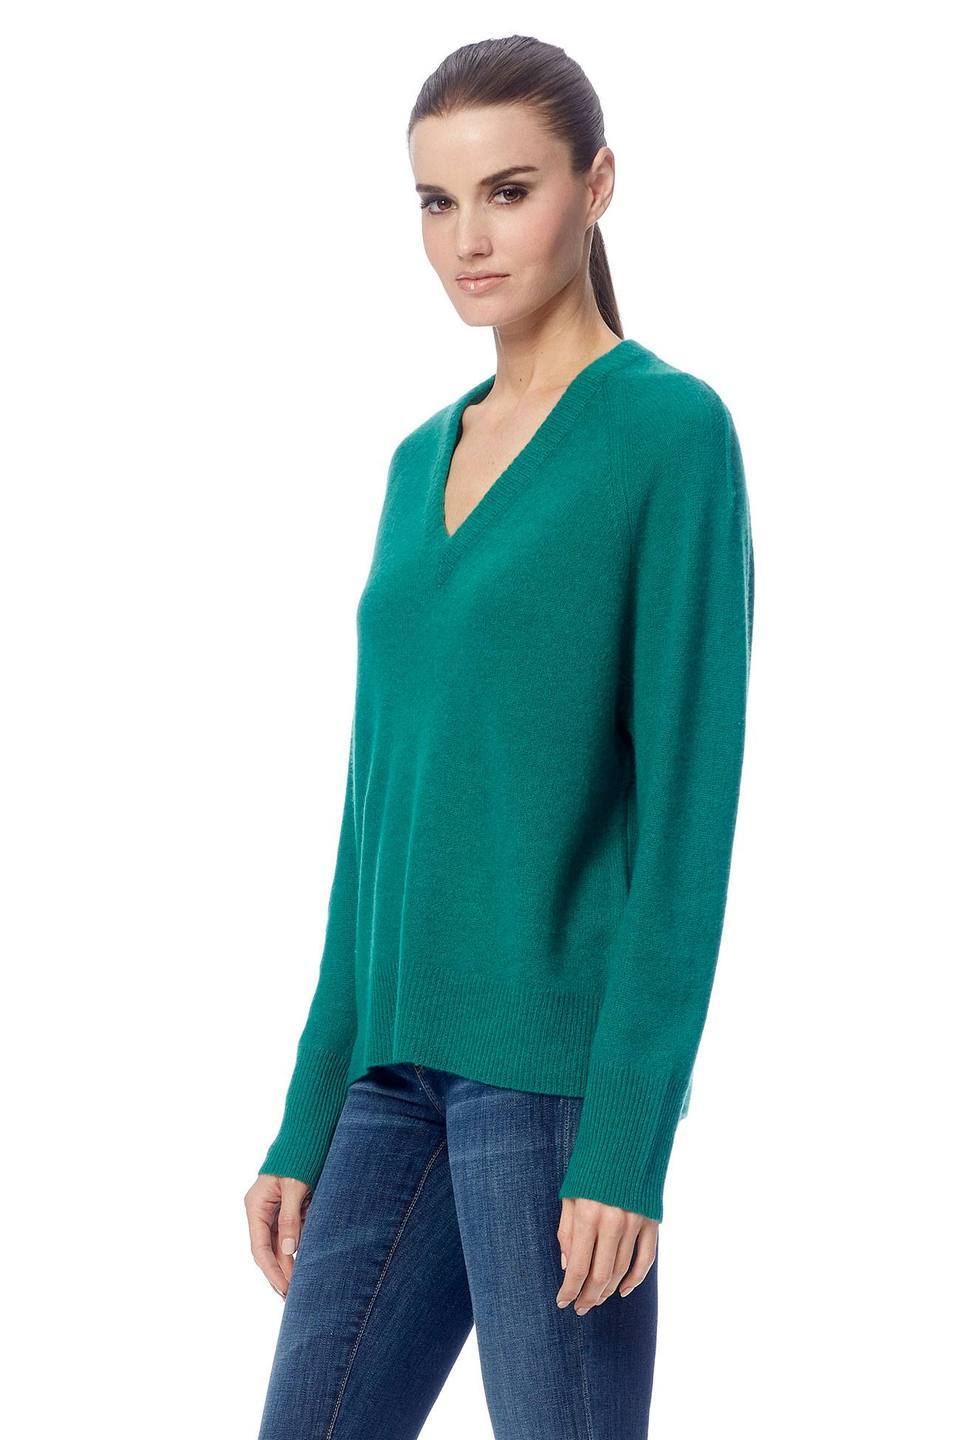 360 Cashmere - Callie Cashmere Sweater in Emerald